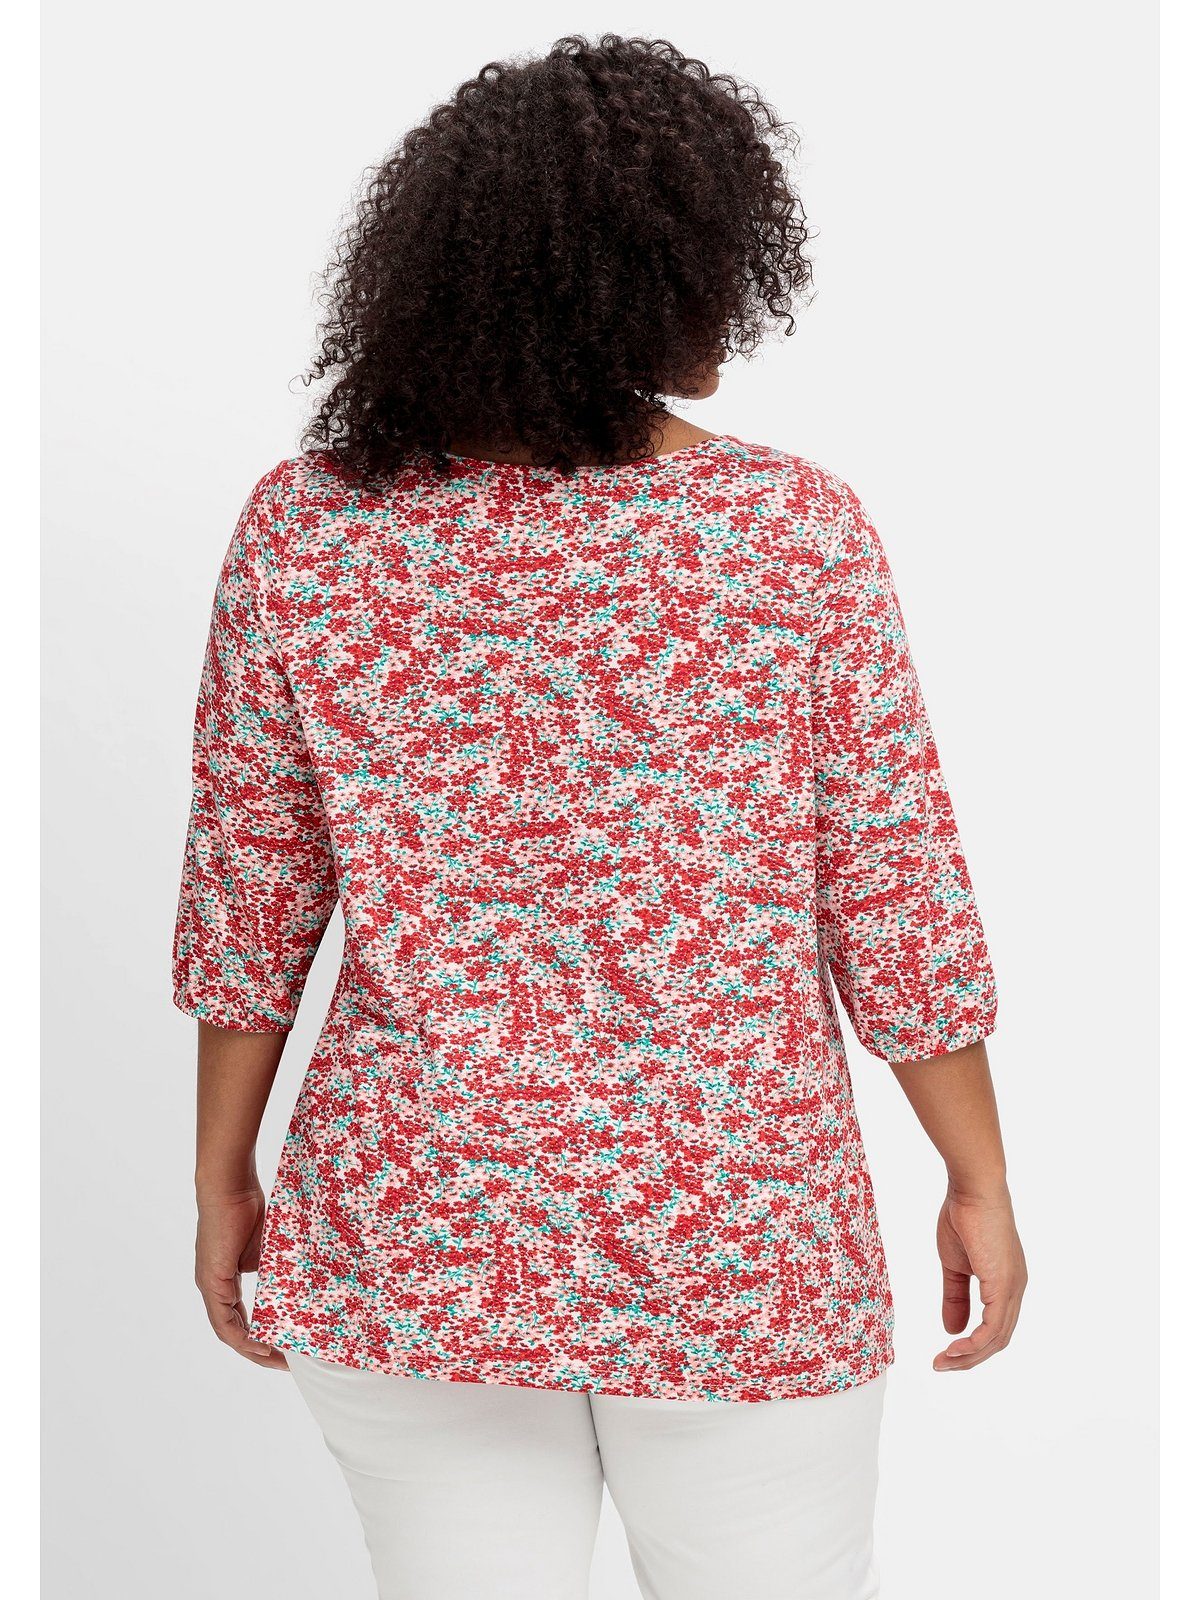 sheego T-Shirt Größen Allover-Blumendruck Ausschnitt Joe by und mit Browns tiefem Große